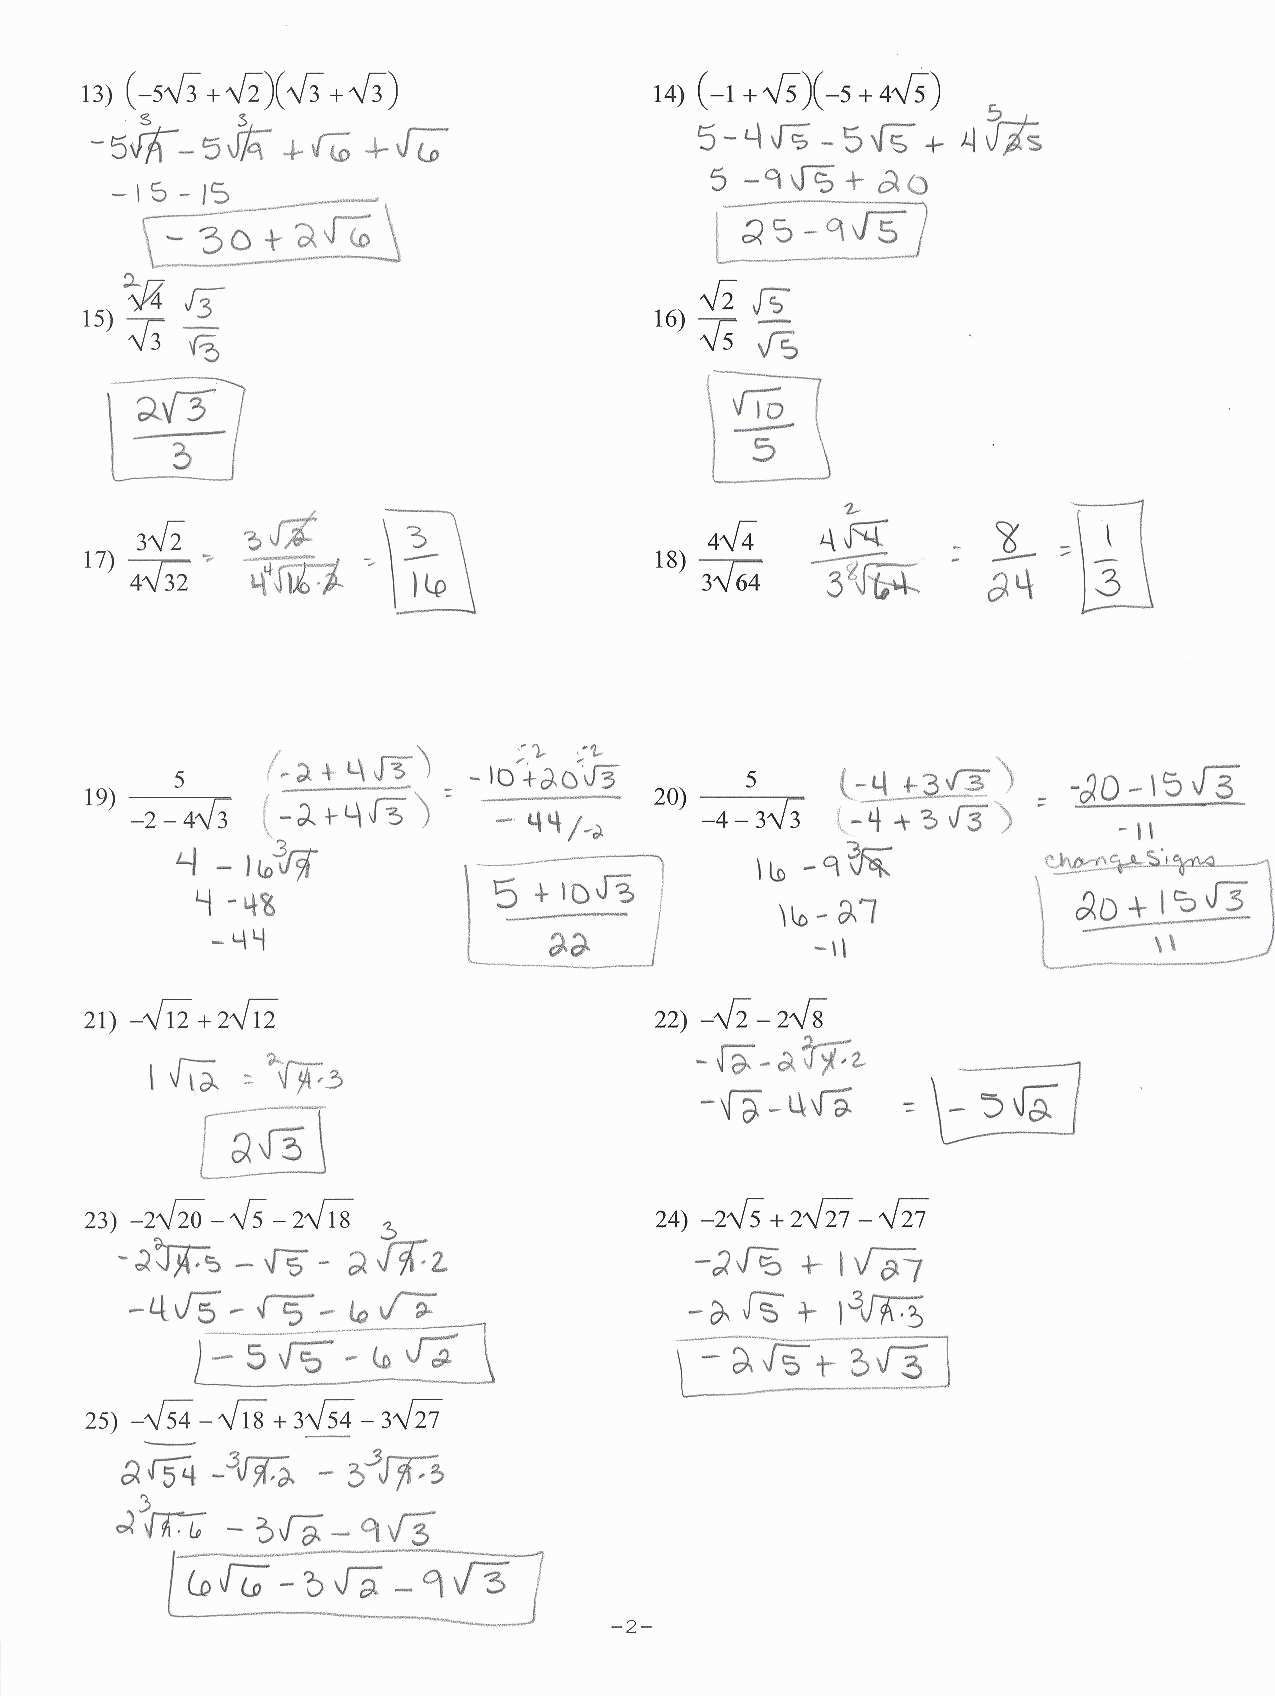 Solving Using The Quadratic Formula Worksheet